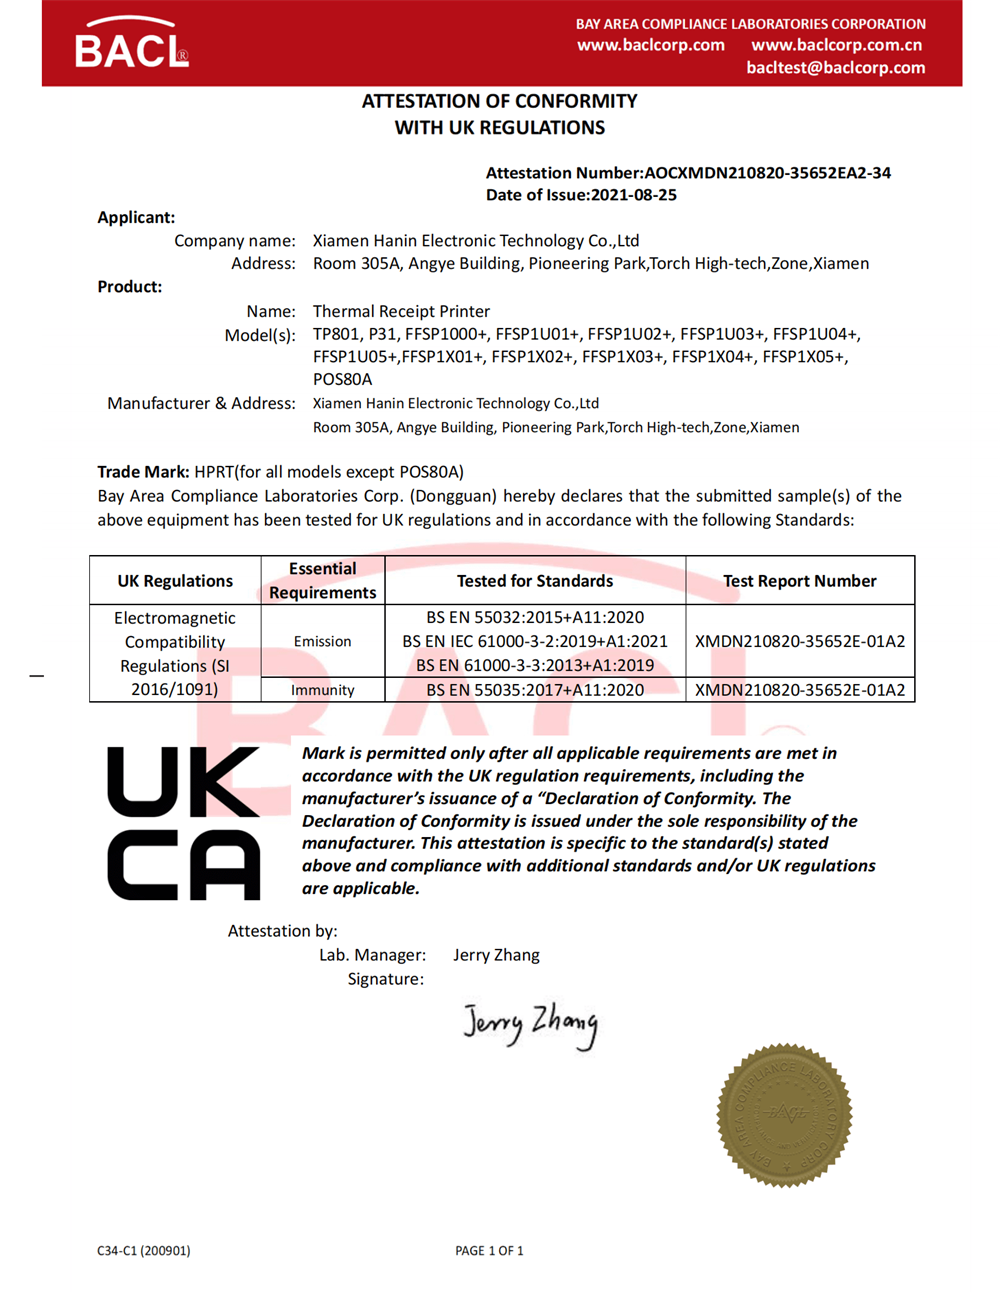 UKCA certificate